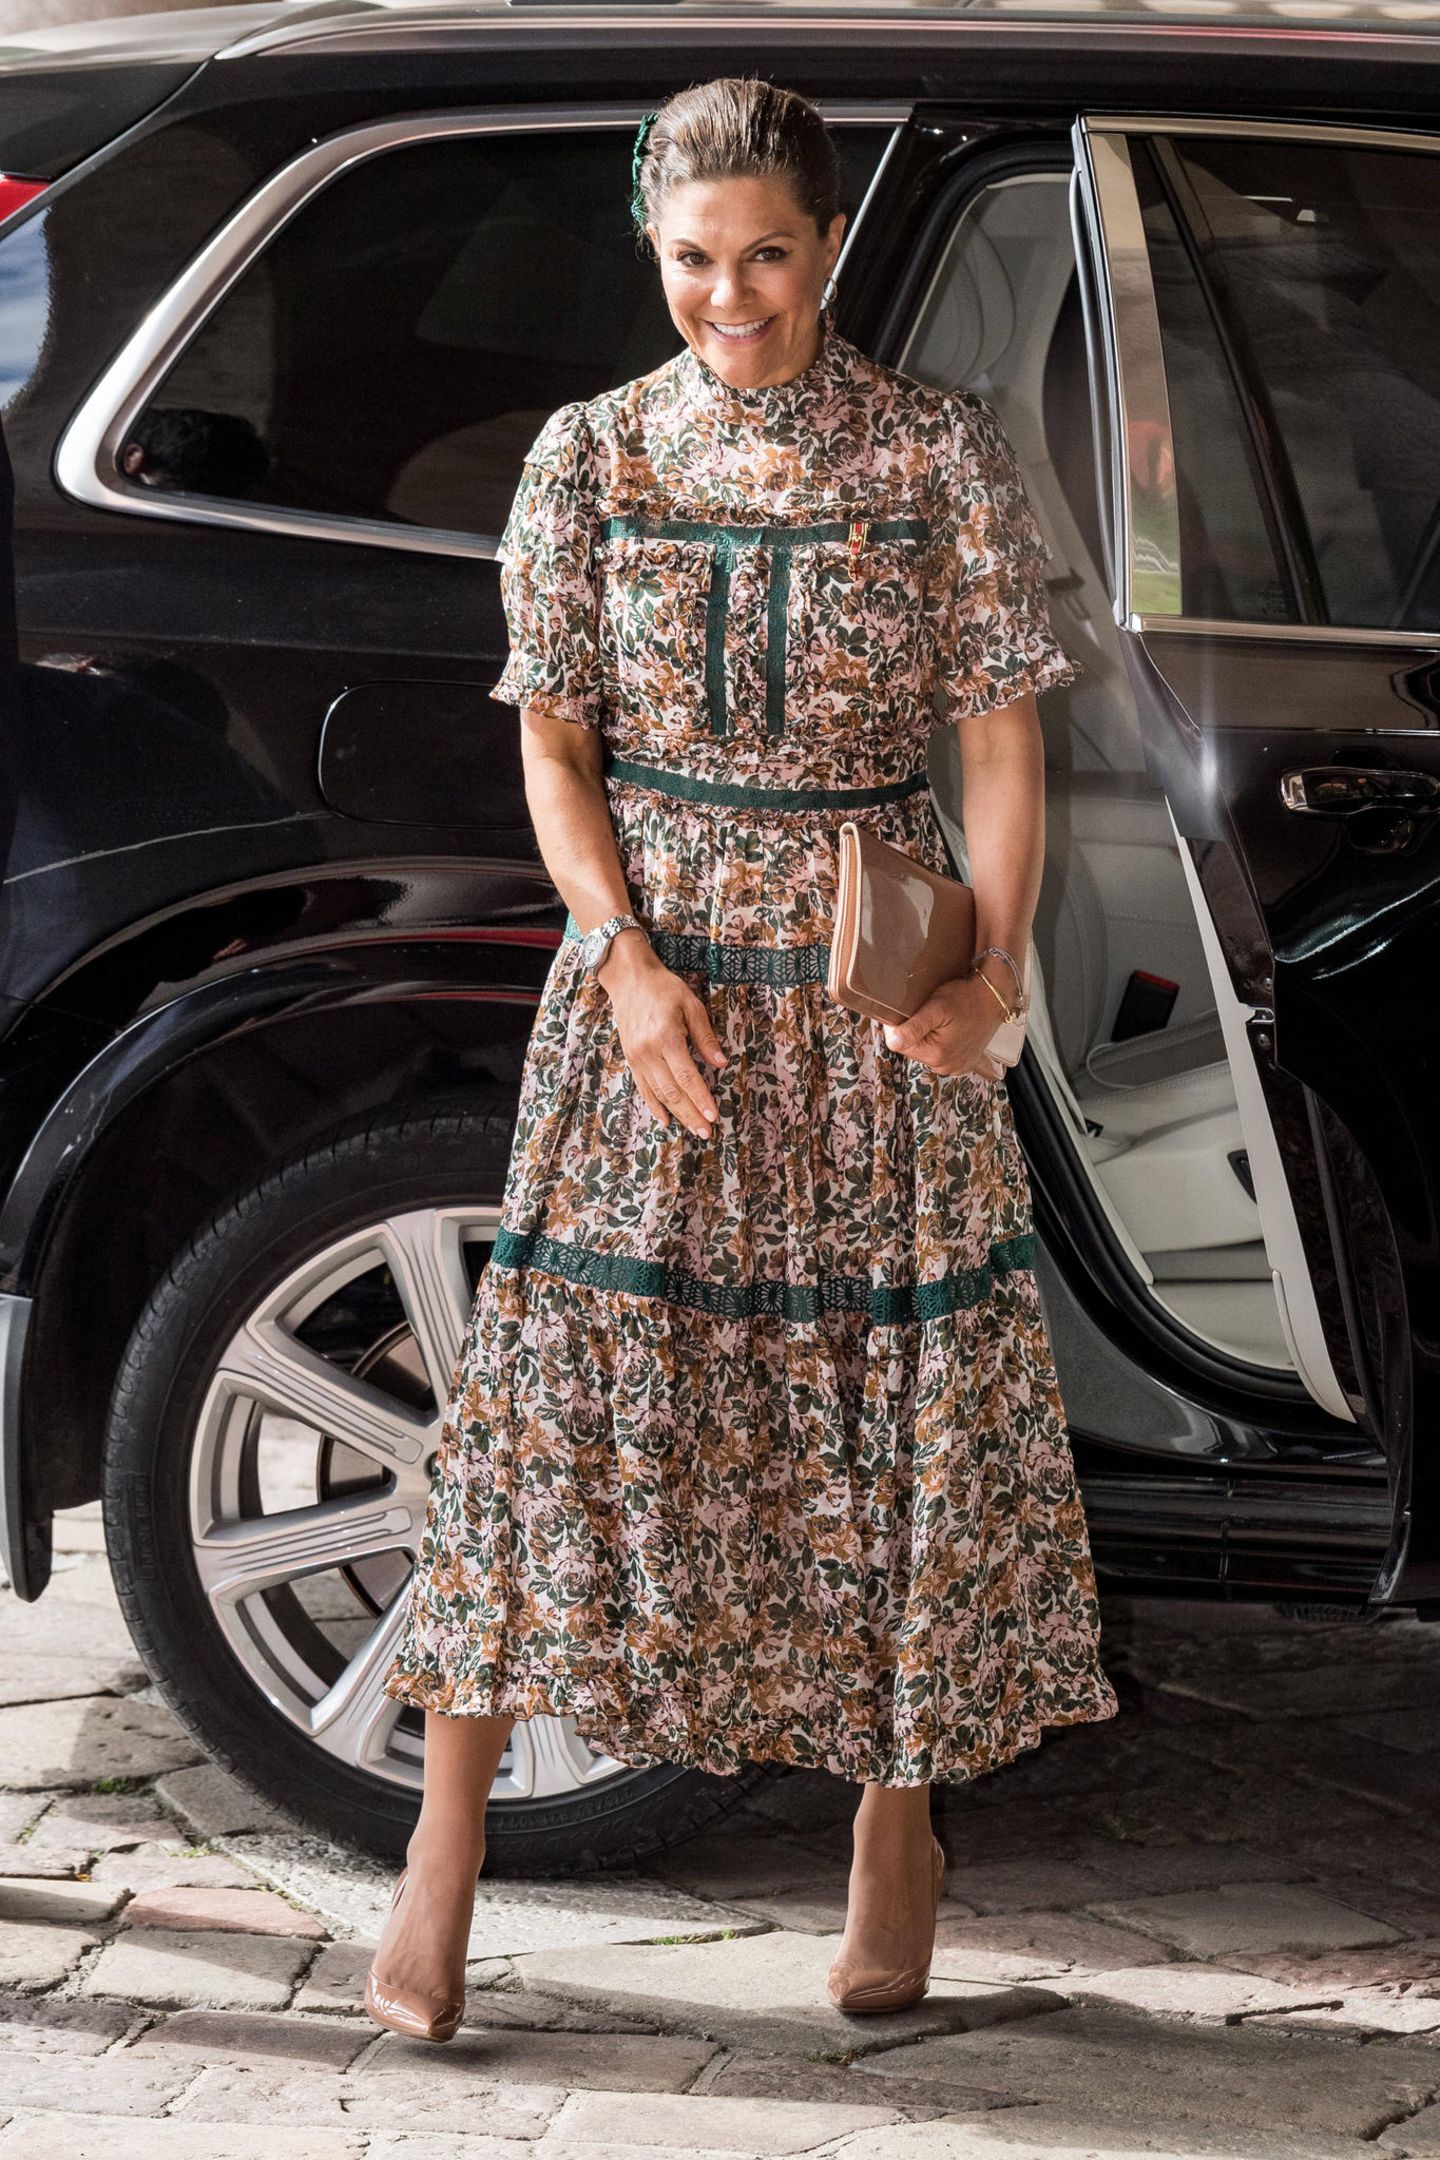 Auch Prinzessin Victoria erscheint zum Termin in Stockholm. Die 44-Jährige trägt ein Mille-Fleurs-Kleid des Labels By Malina. Besonders hübsch sind die abgesetzten Nähte in Dunkelgrün. Pumps von Gianvito Rossi und eine Clutch von Abro komplettieren ihren spätsommerlichen Look perfekt. 